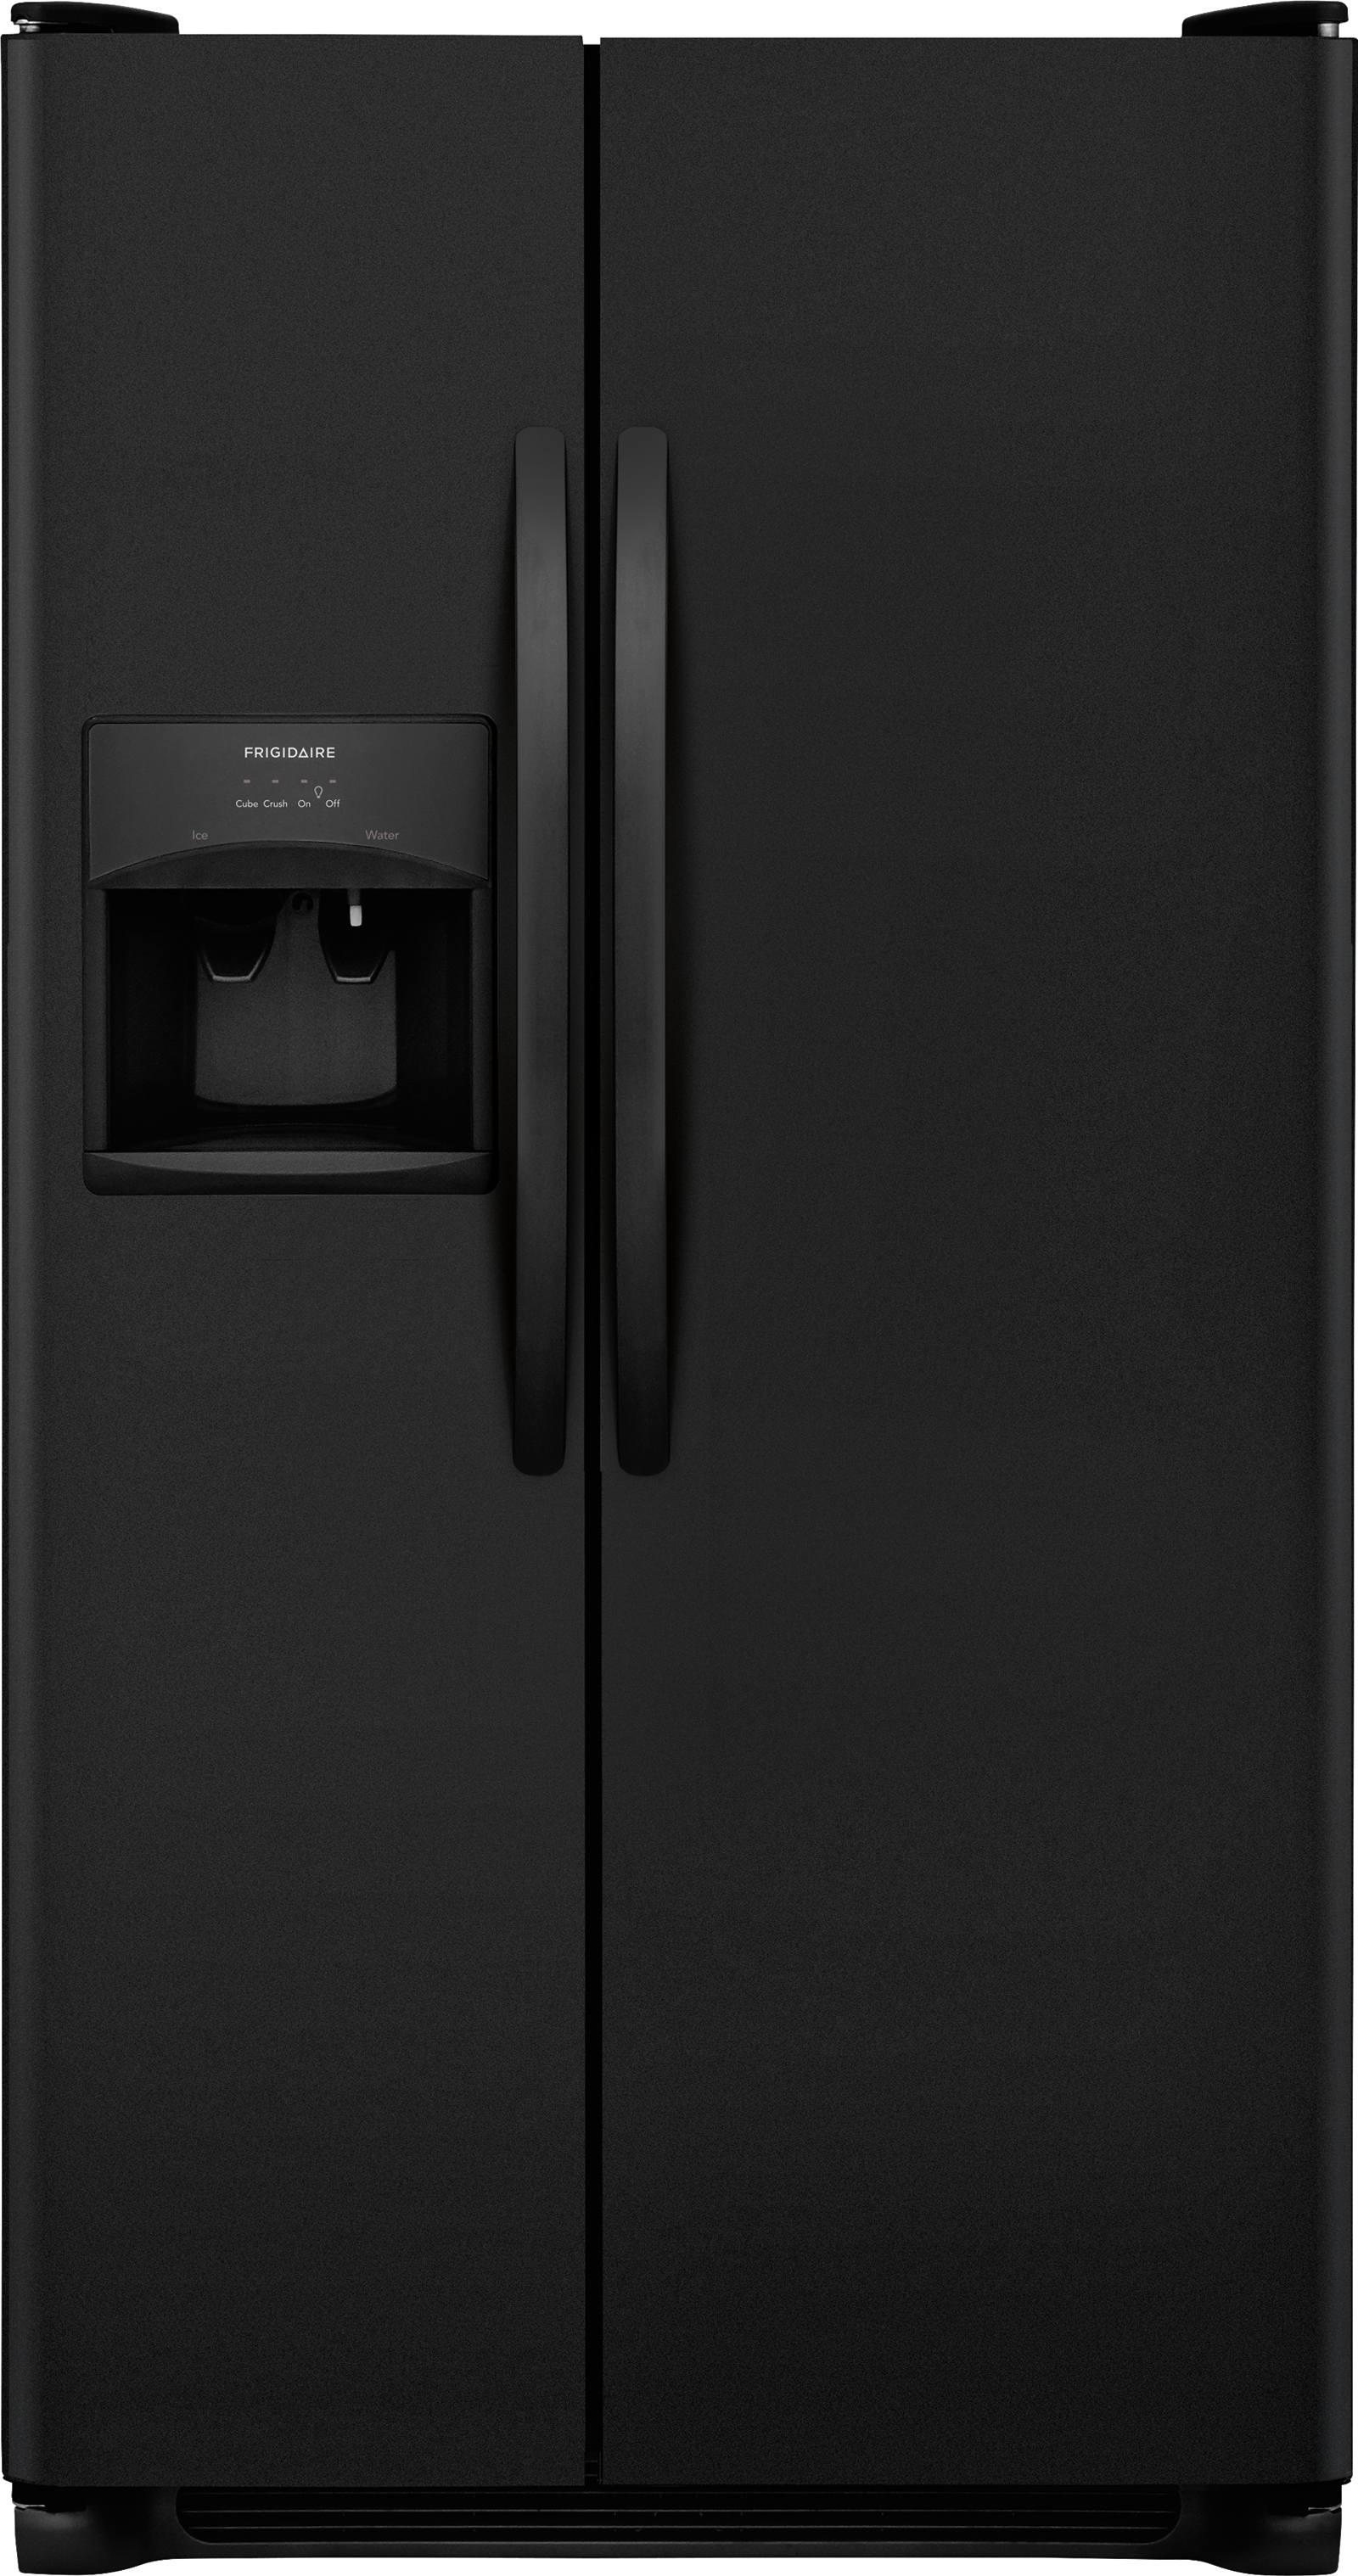 Frigidaire FFSS2315TE 22.1 cu. ft. Side-By-Side Refrigerator - Black ...